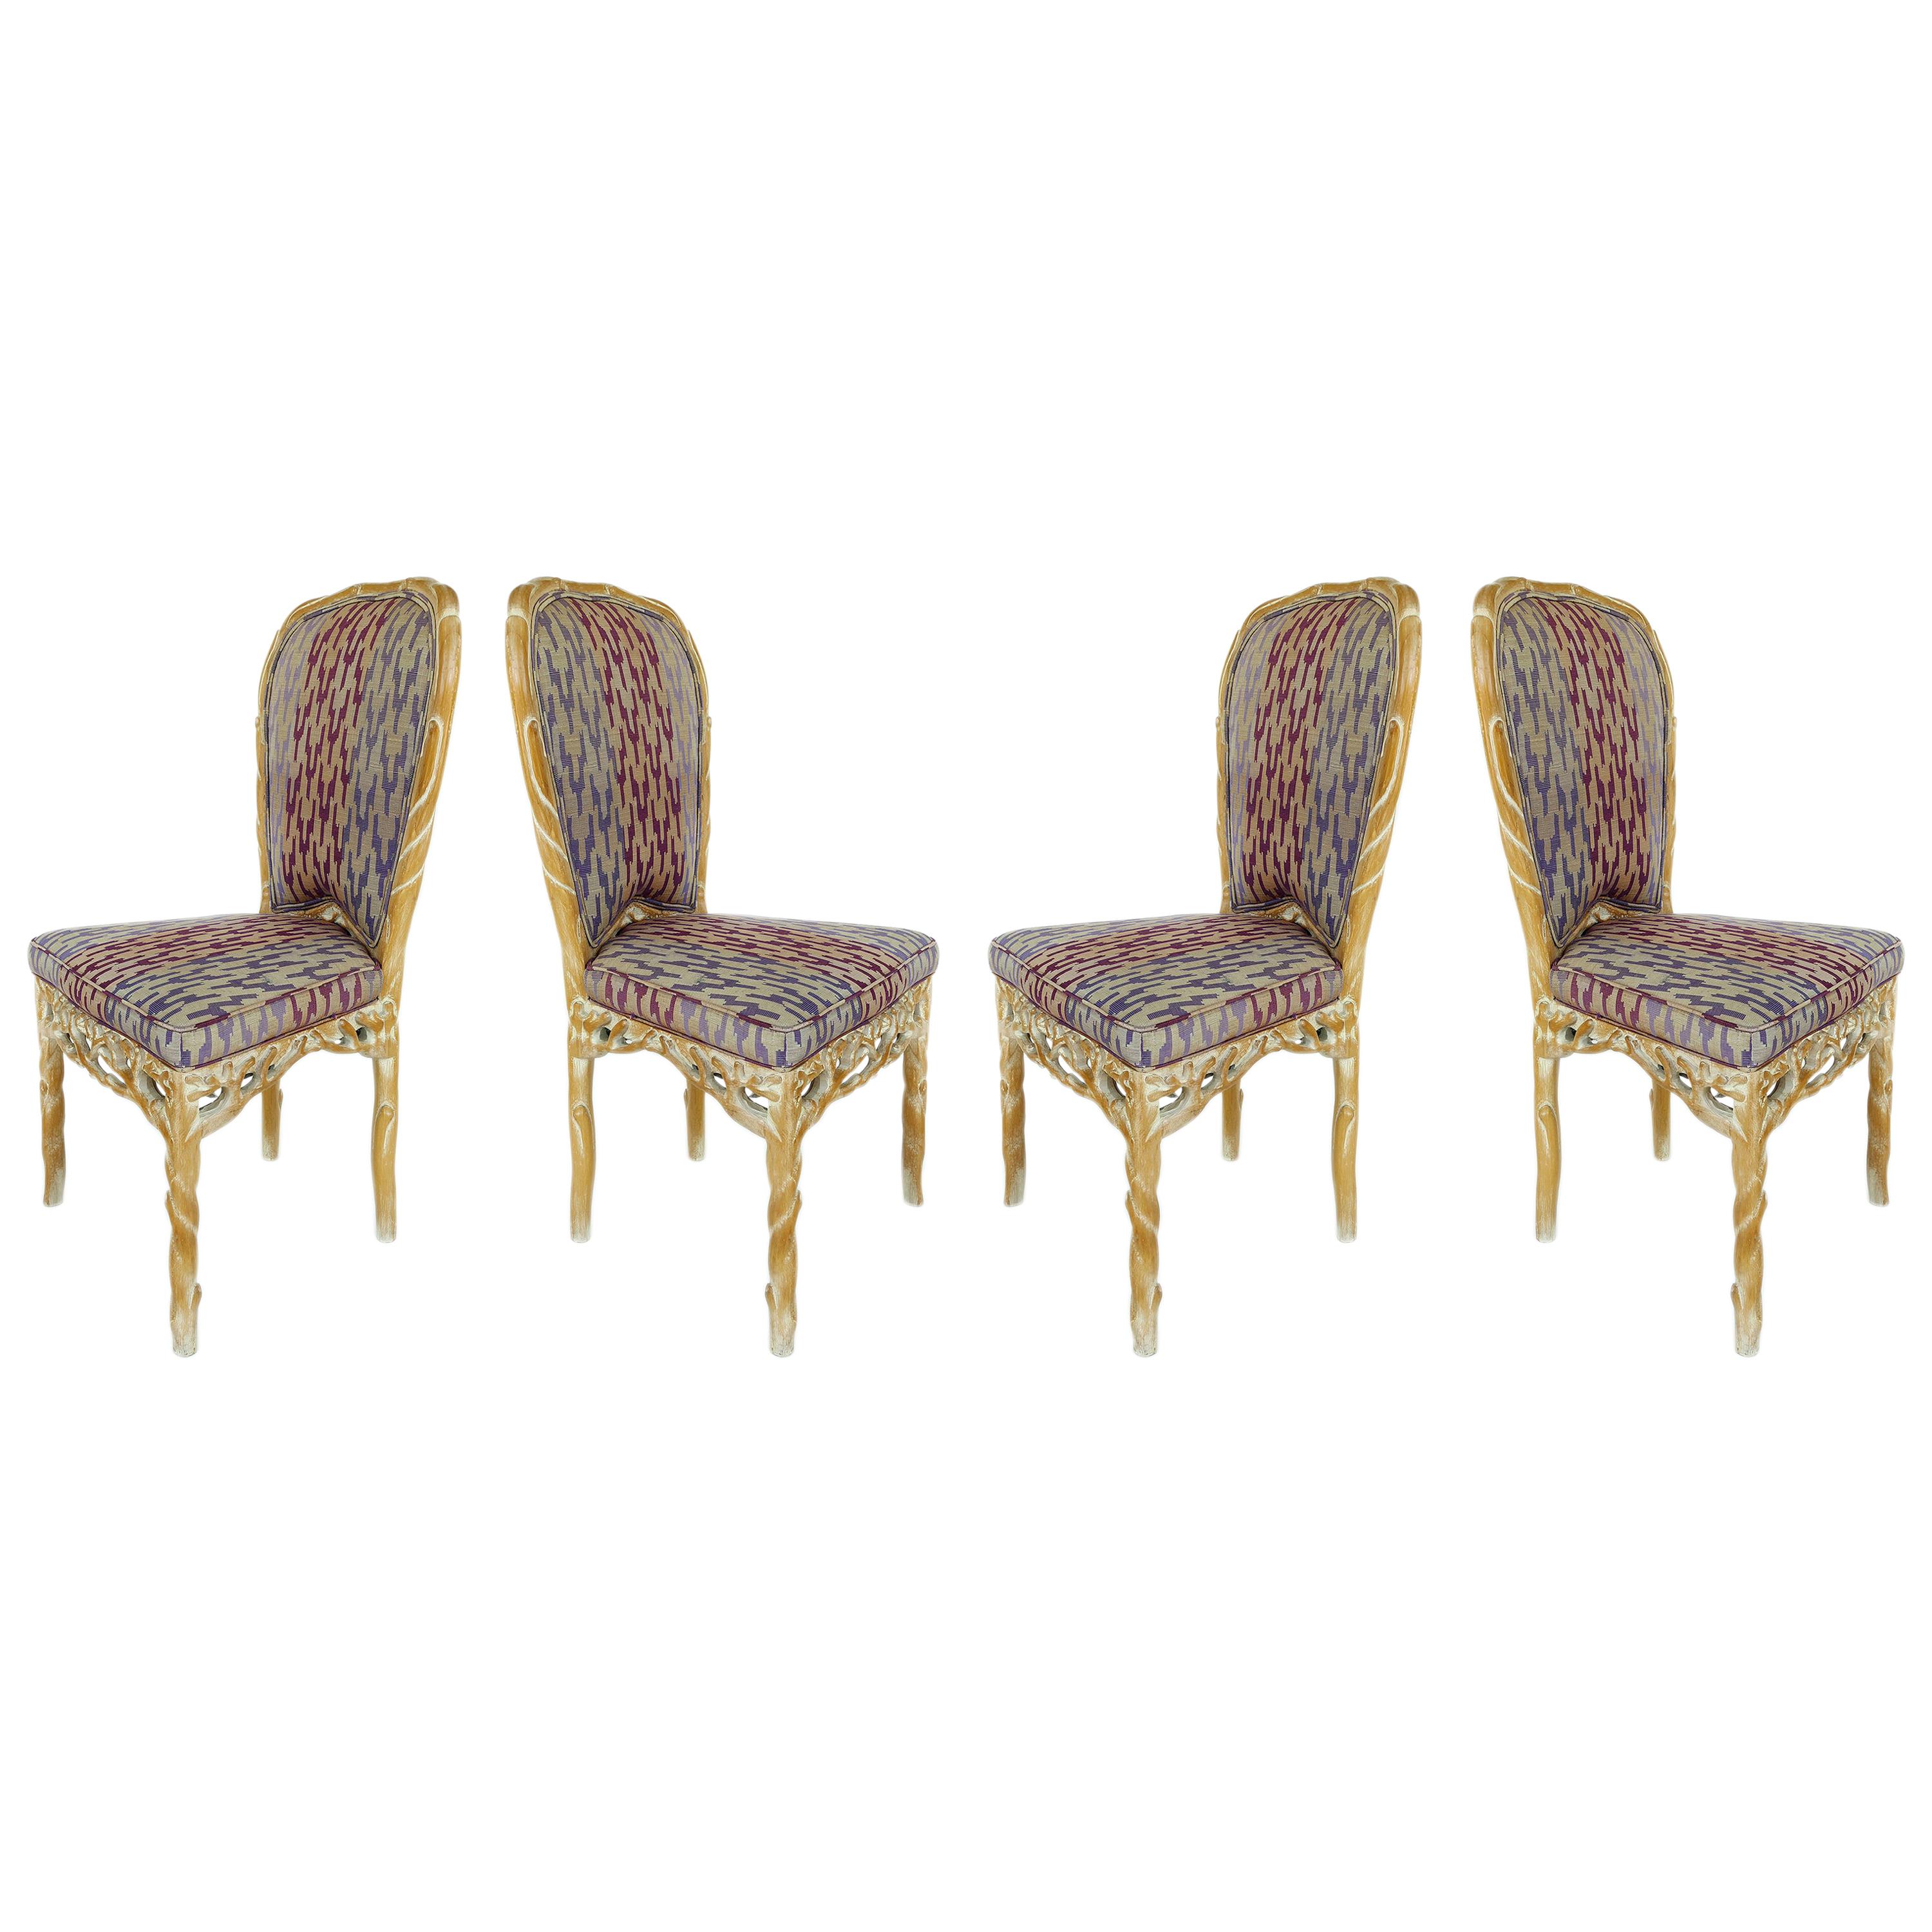 Faux Bois geschnitzte Holzstühle mit weiß getünchter Oberfläche:: 4er-Set